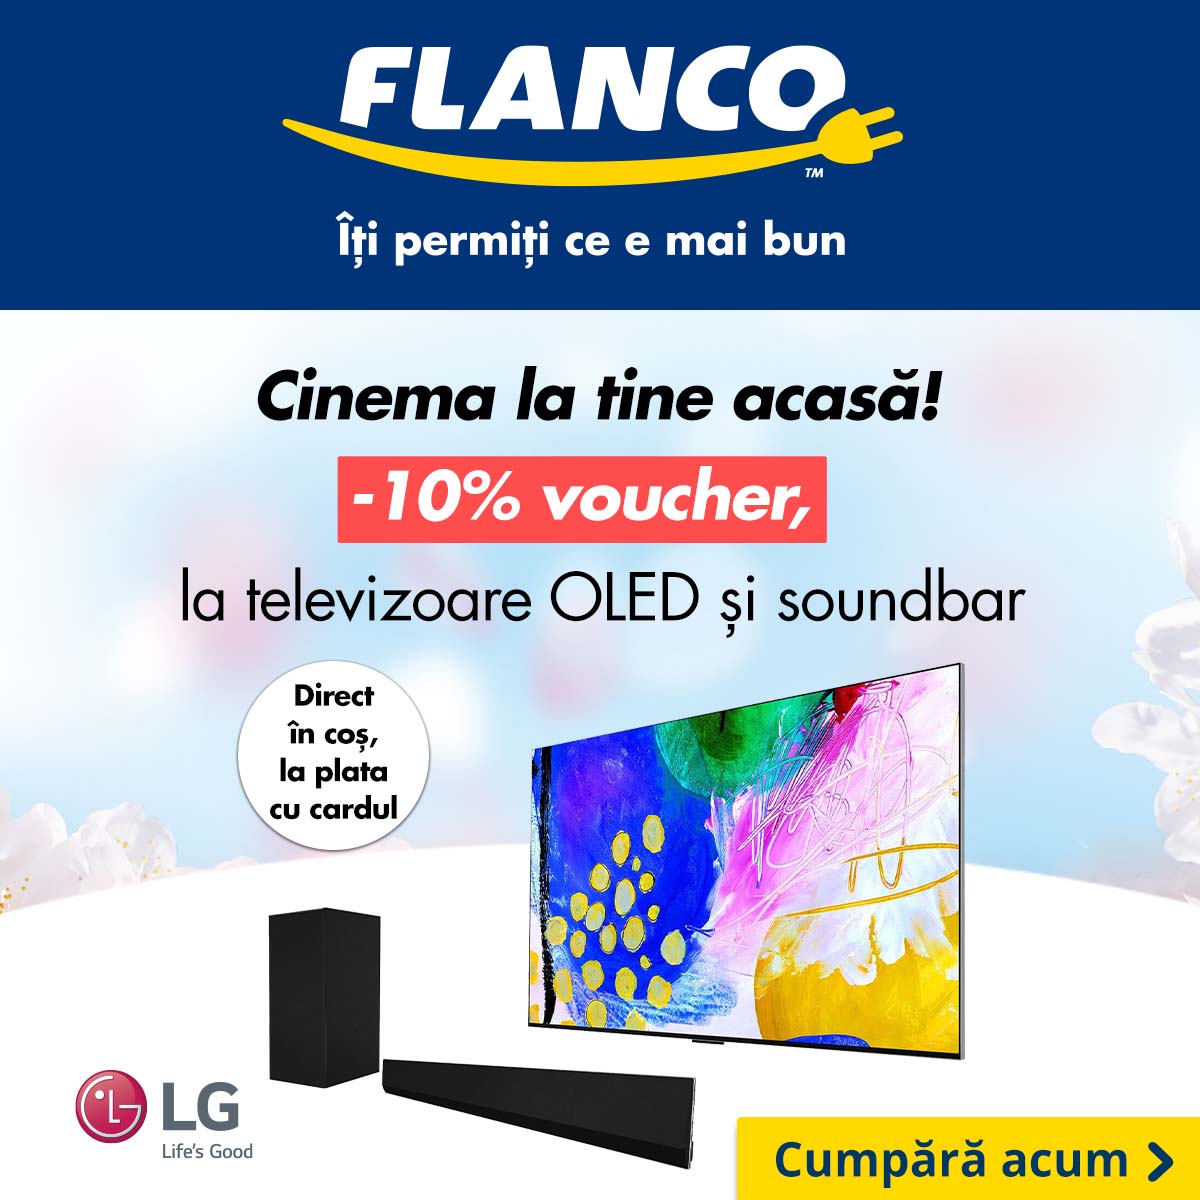 Flanco - Cinema la tine acasa cu 10% reducere pentru selectia de televizoare si soundbar LG